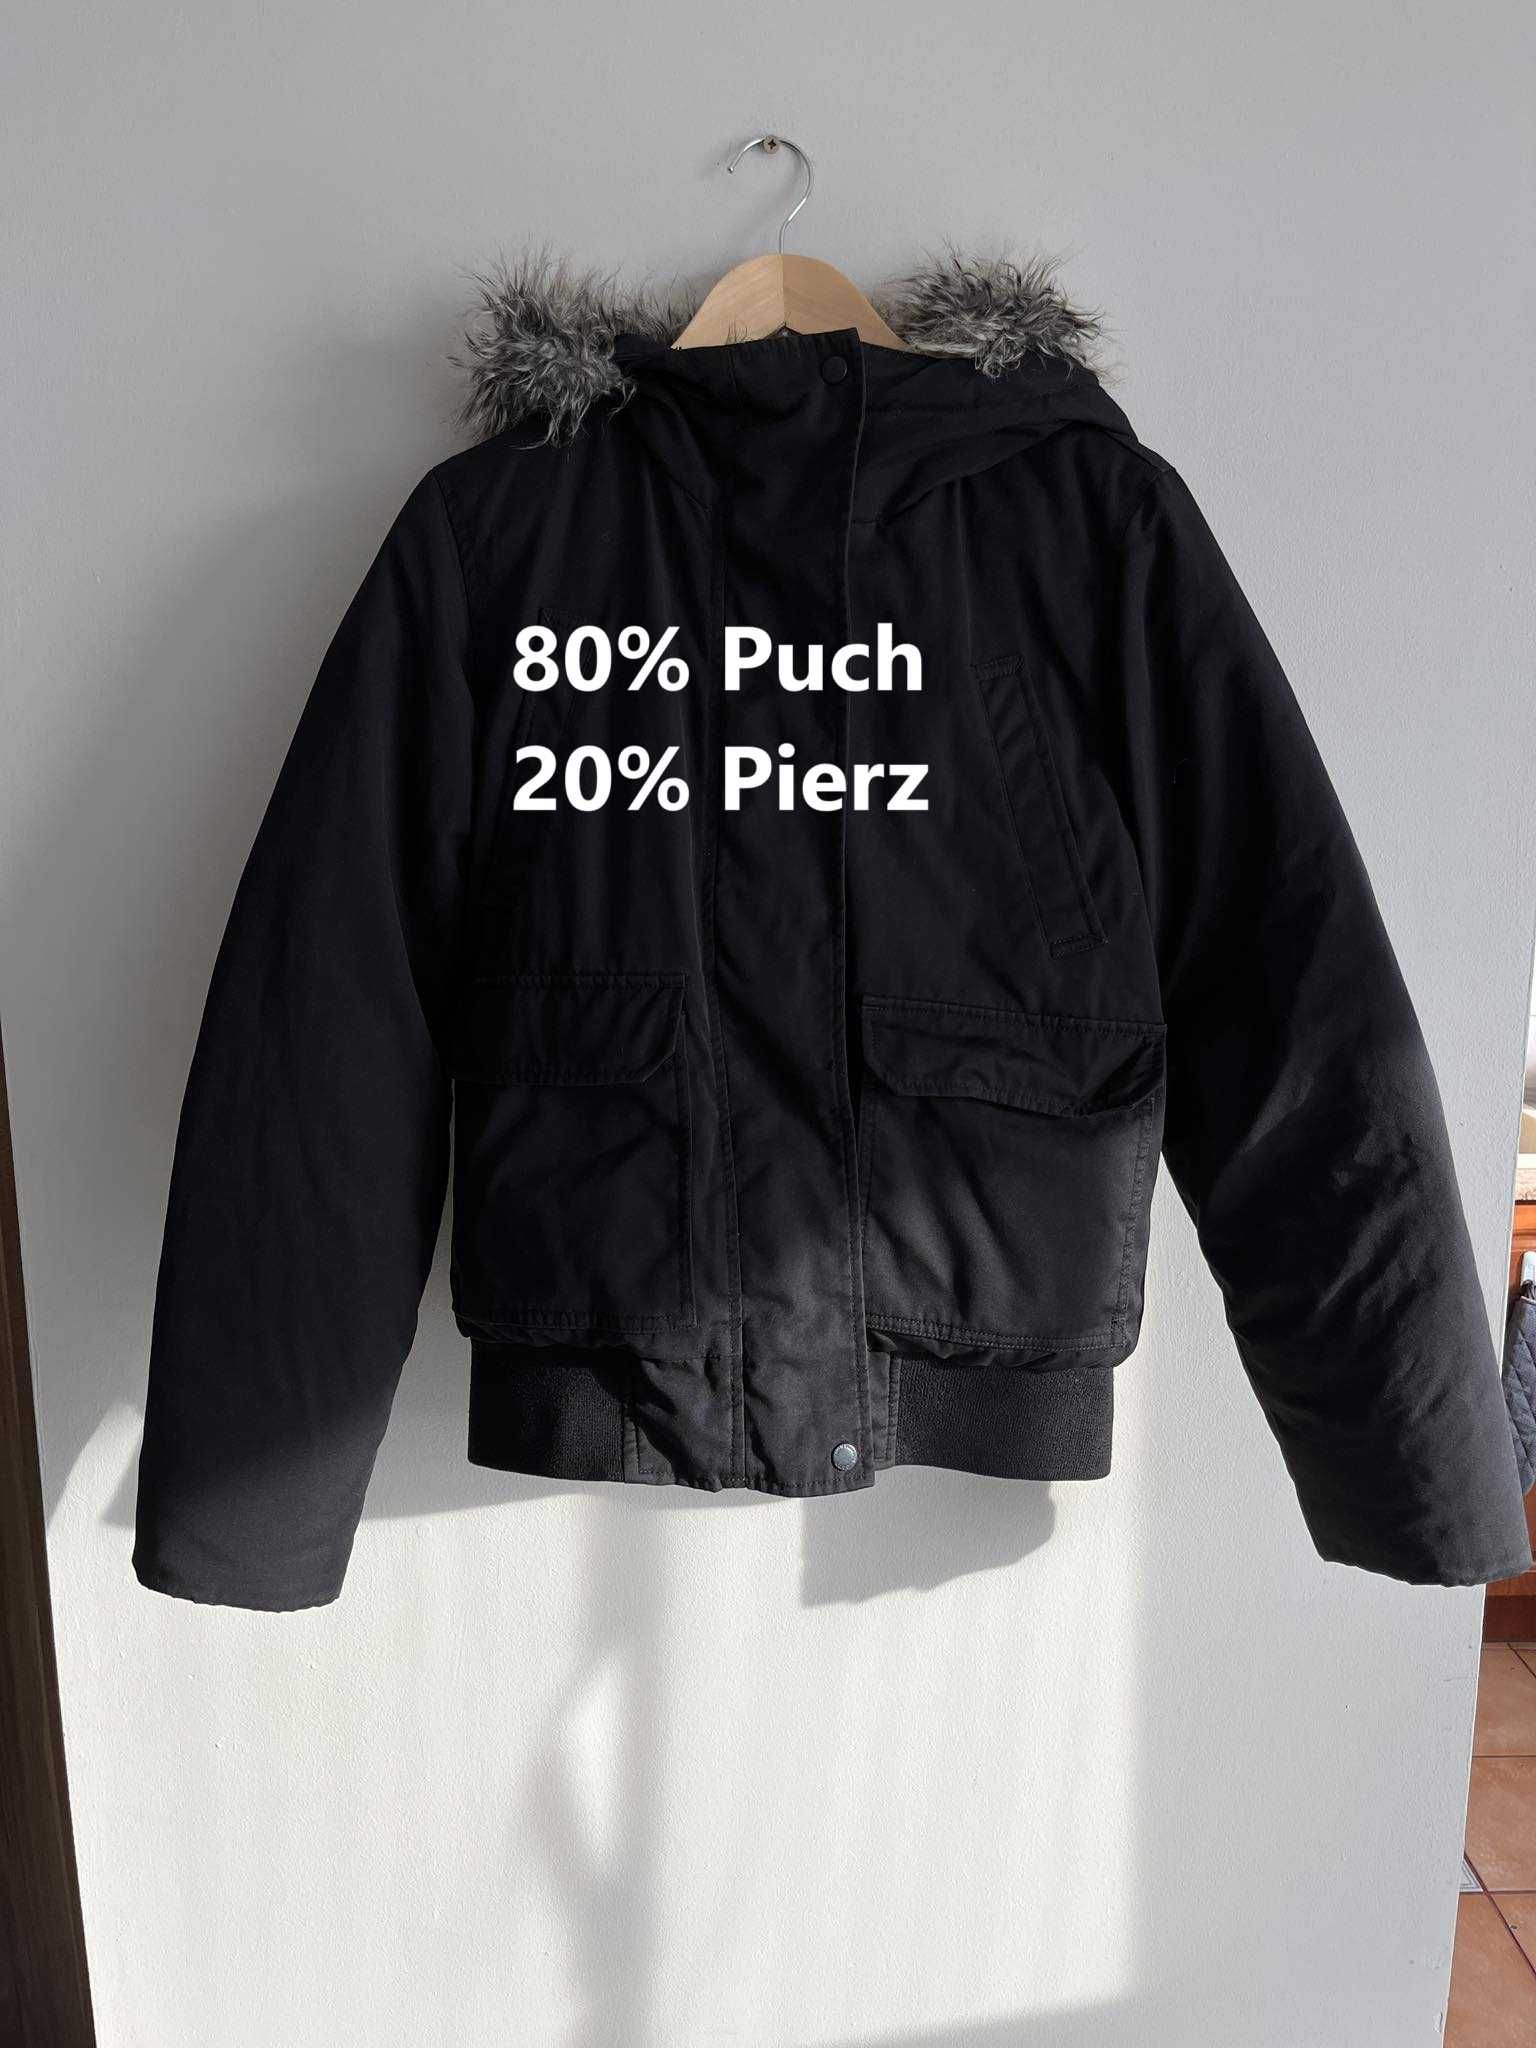 Czarna kurtka puchowa H&M Premium 80% Puch 20% pierz rozmiar 36